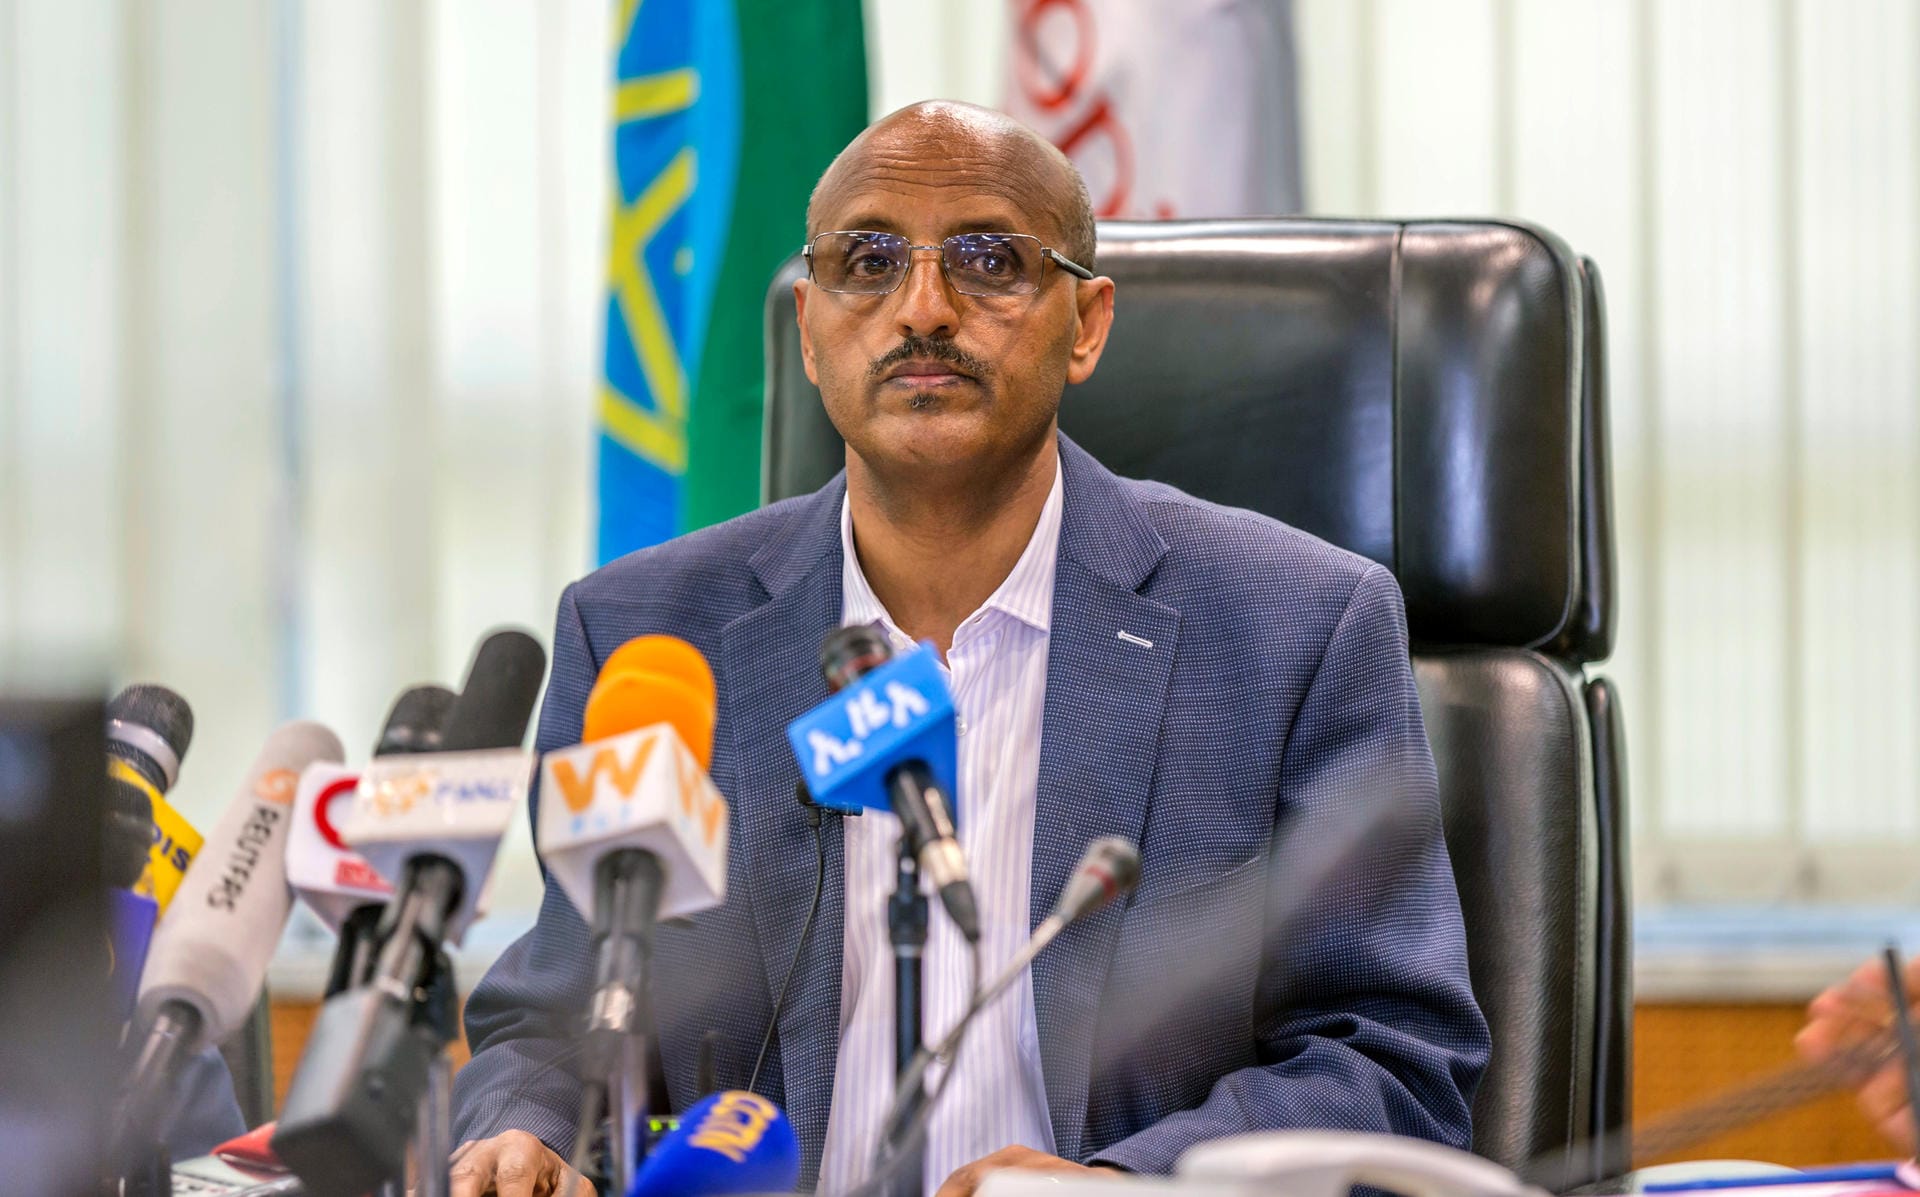 Fassungslos: Der Chef der von Ethiopian Airlines, Tewolde Gebremariam, bei einer eilig einberufenen Pressekonferenz in Addis Ababa.